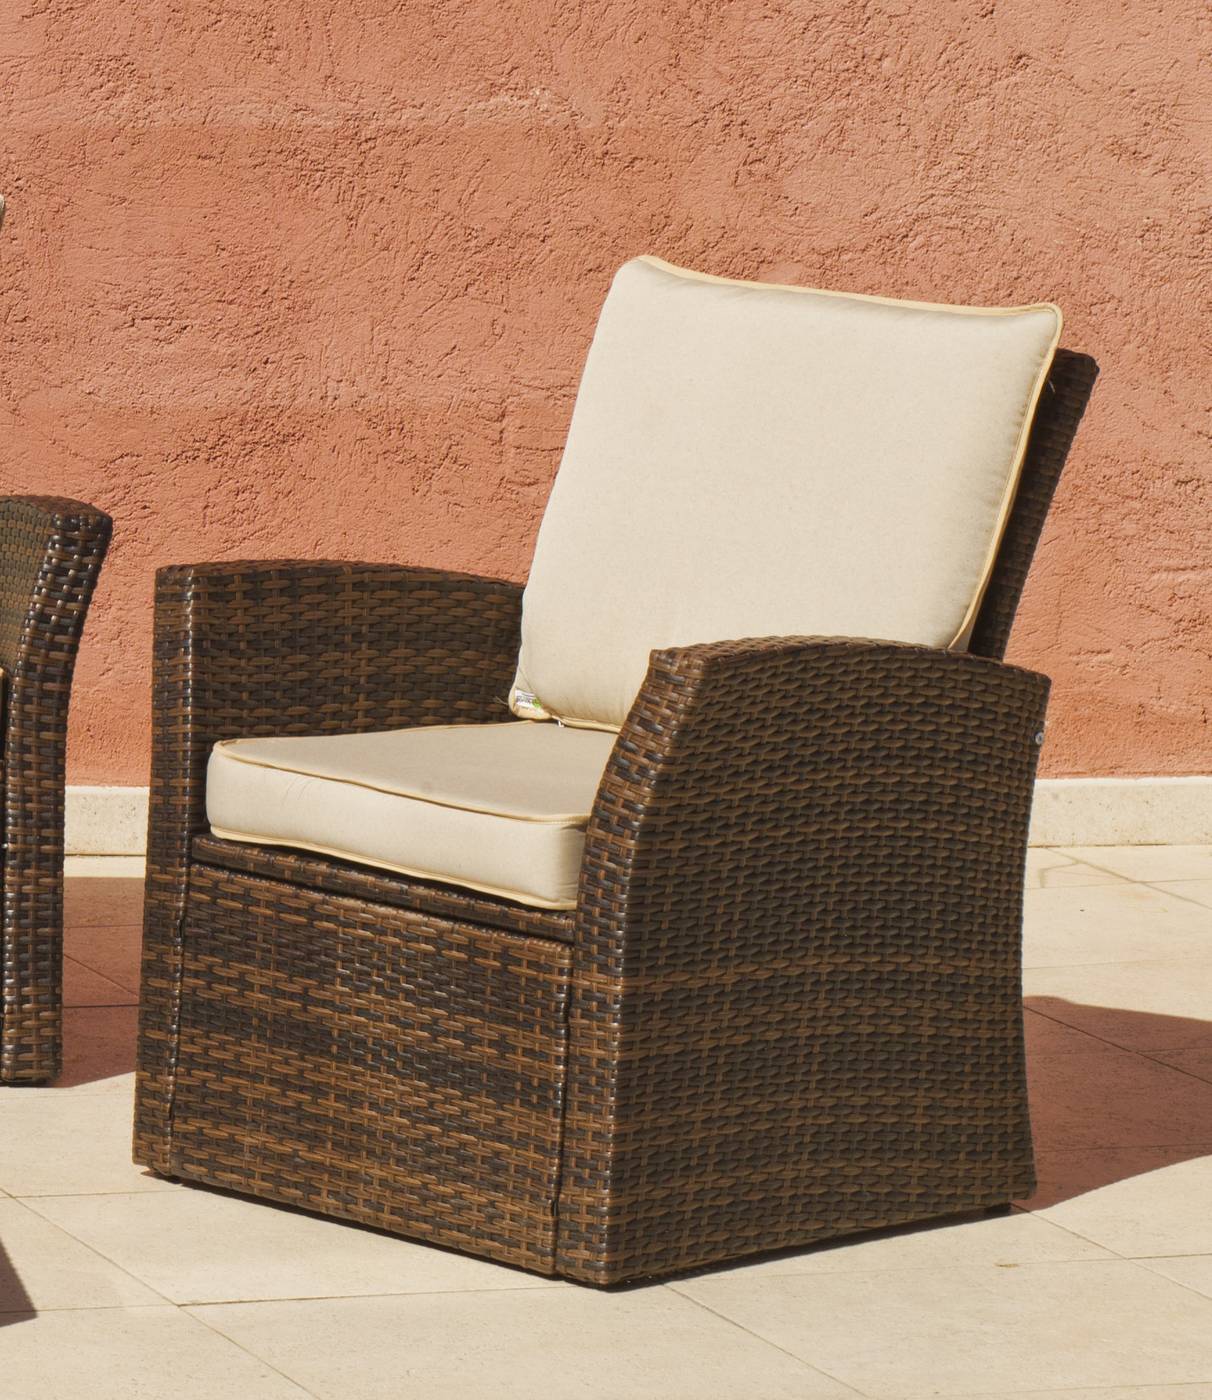 Conjunto Ratán Sint. Alpes-7 - Conjunto desmontable de ratán sintético color marrón: sofá 2 plazas + 2 sillones + mesa de centro